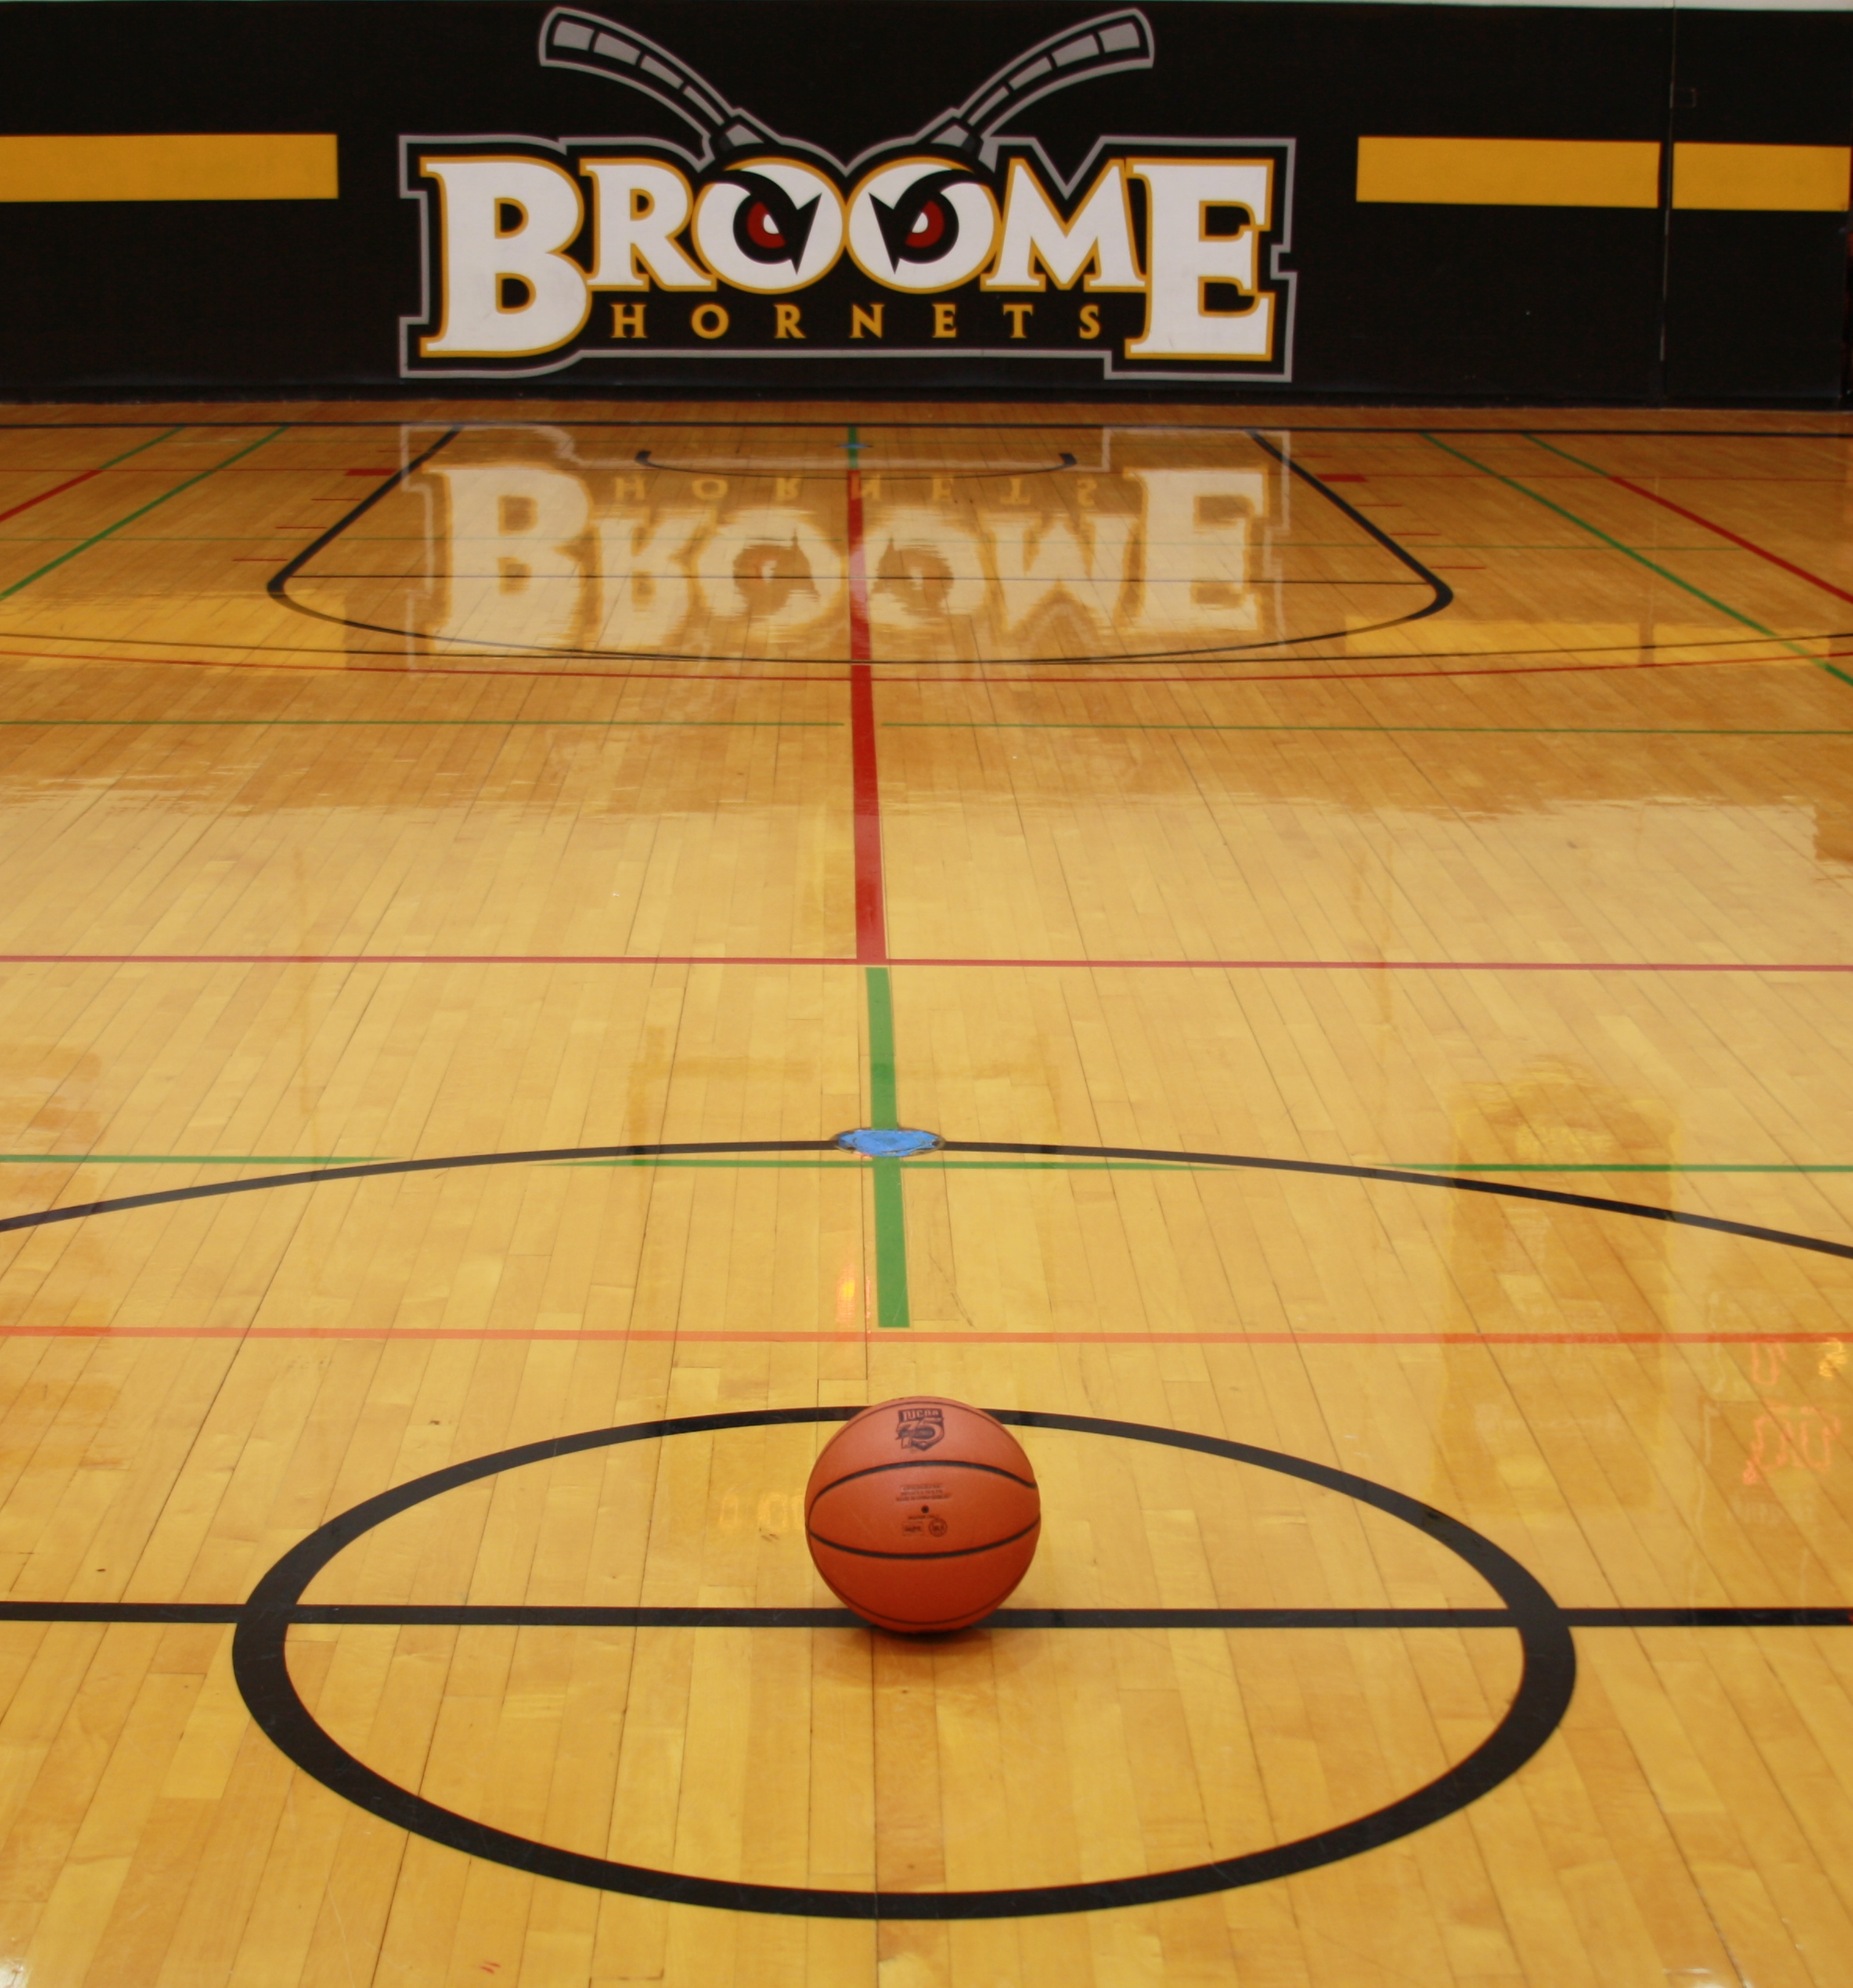 Broome basketball court